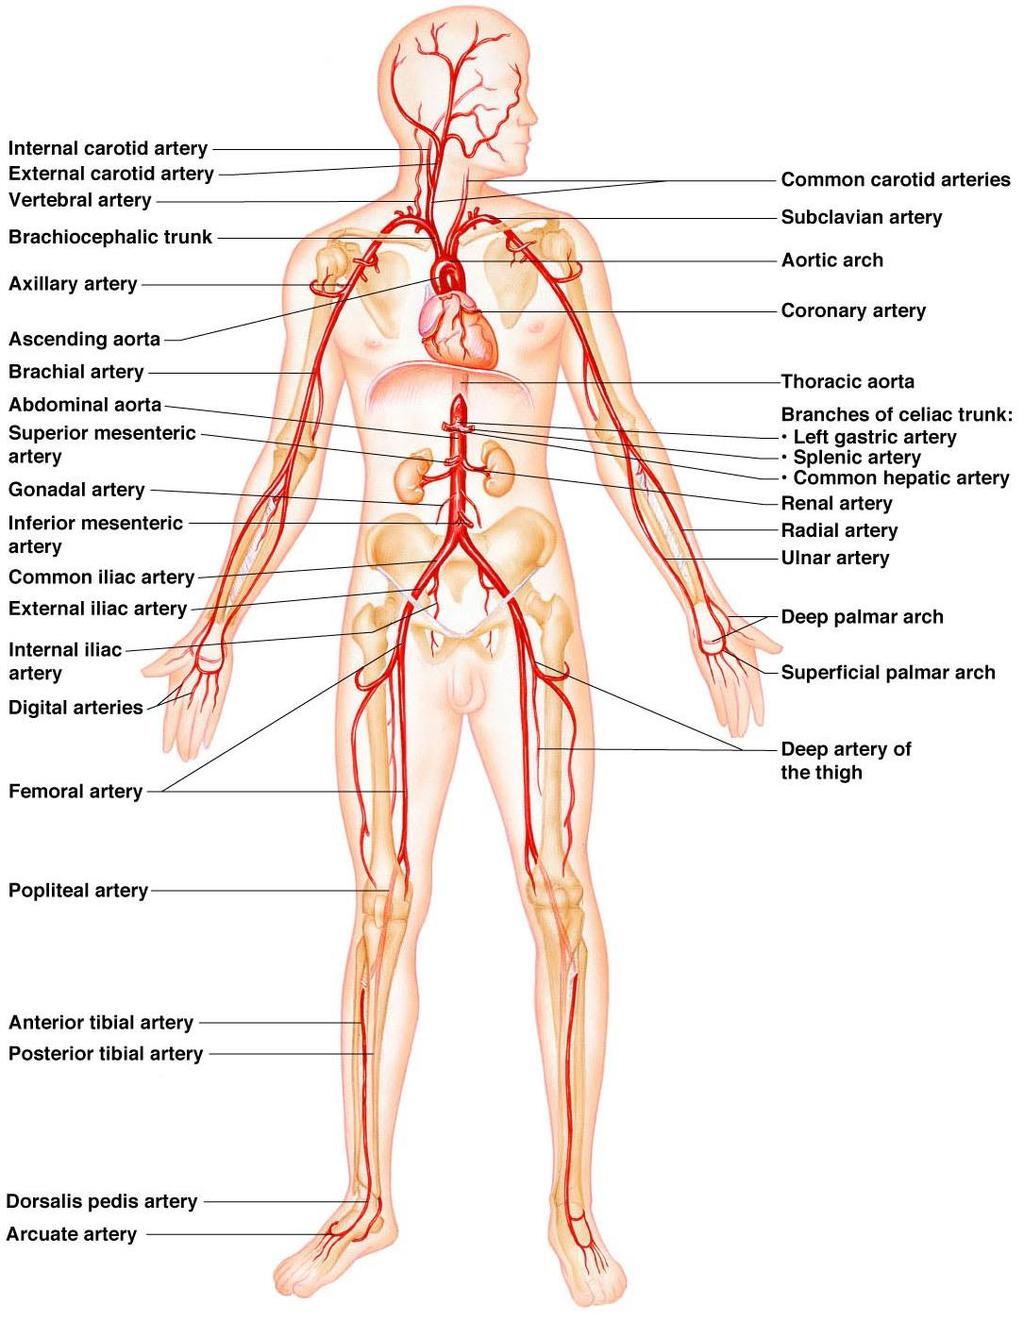 Major Arteries of